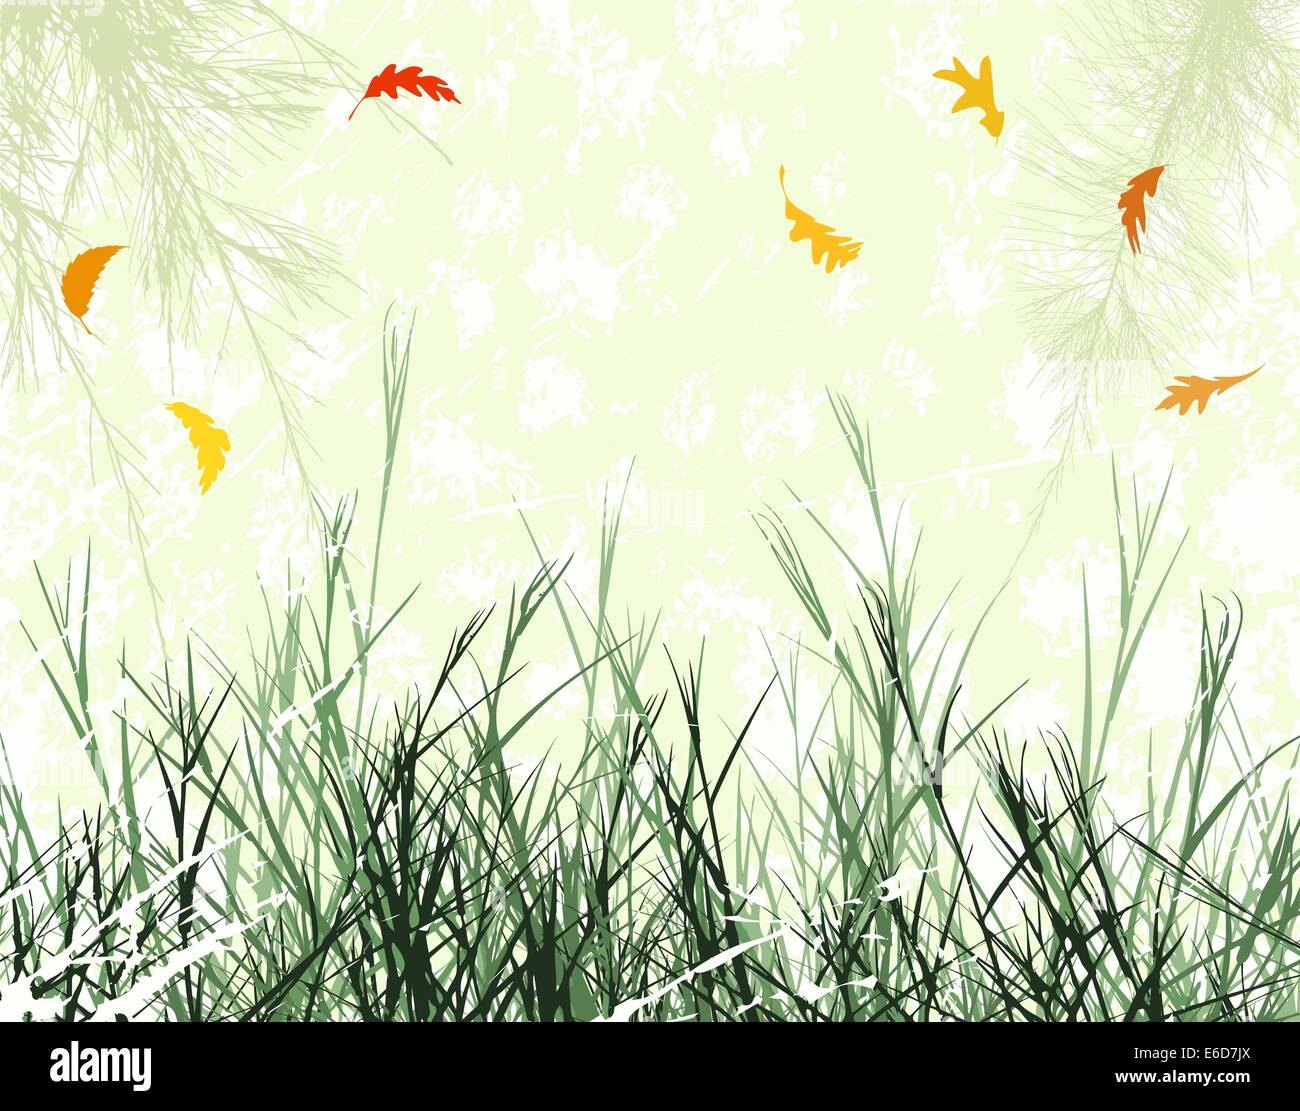 Editierbare Vektor-Illustration der winterlichen Vegetation mit Wind geblasen verlässt als separate Objekte Stock Vektor